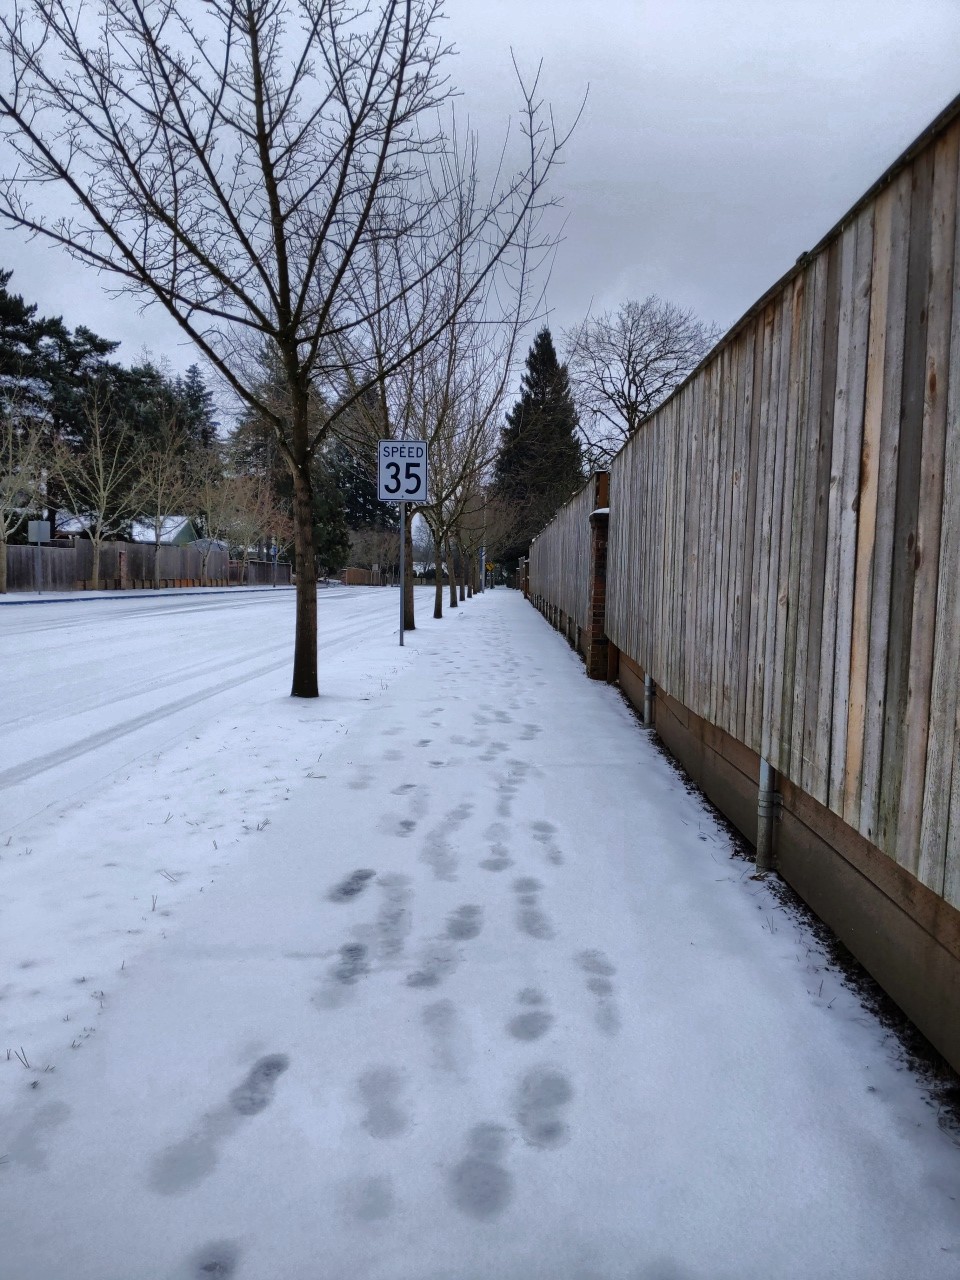 Snowy sidewalk